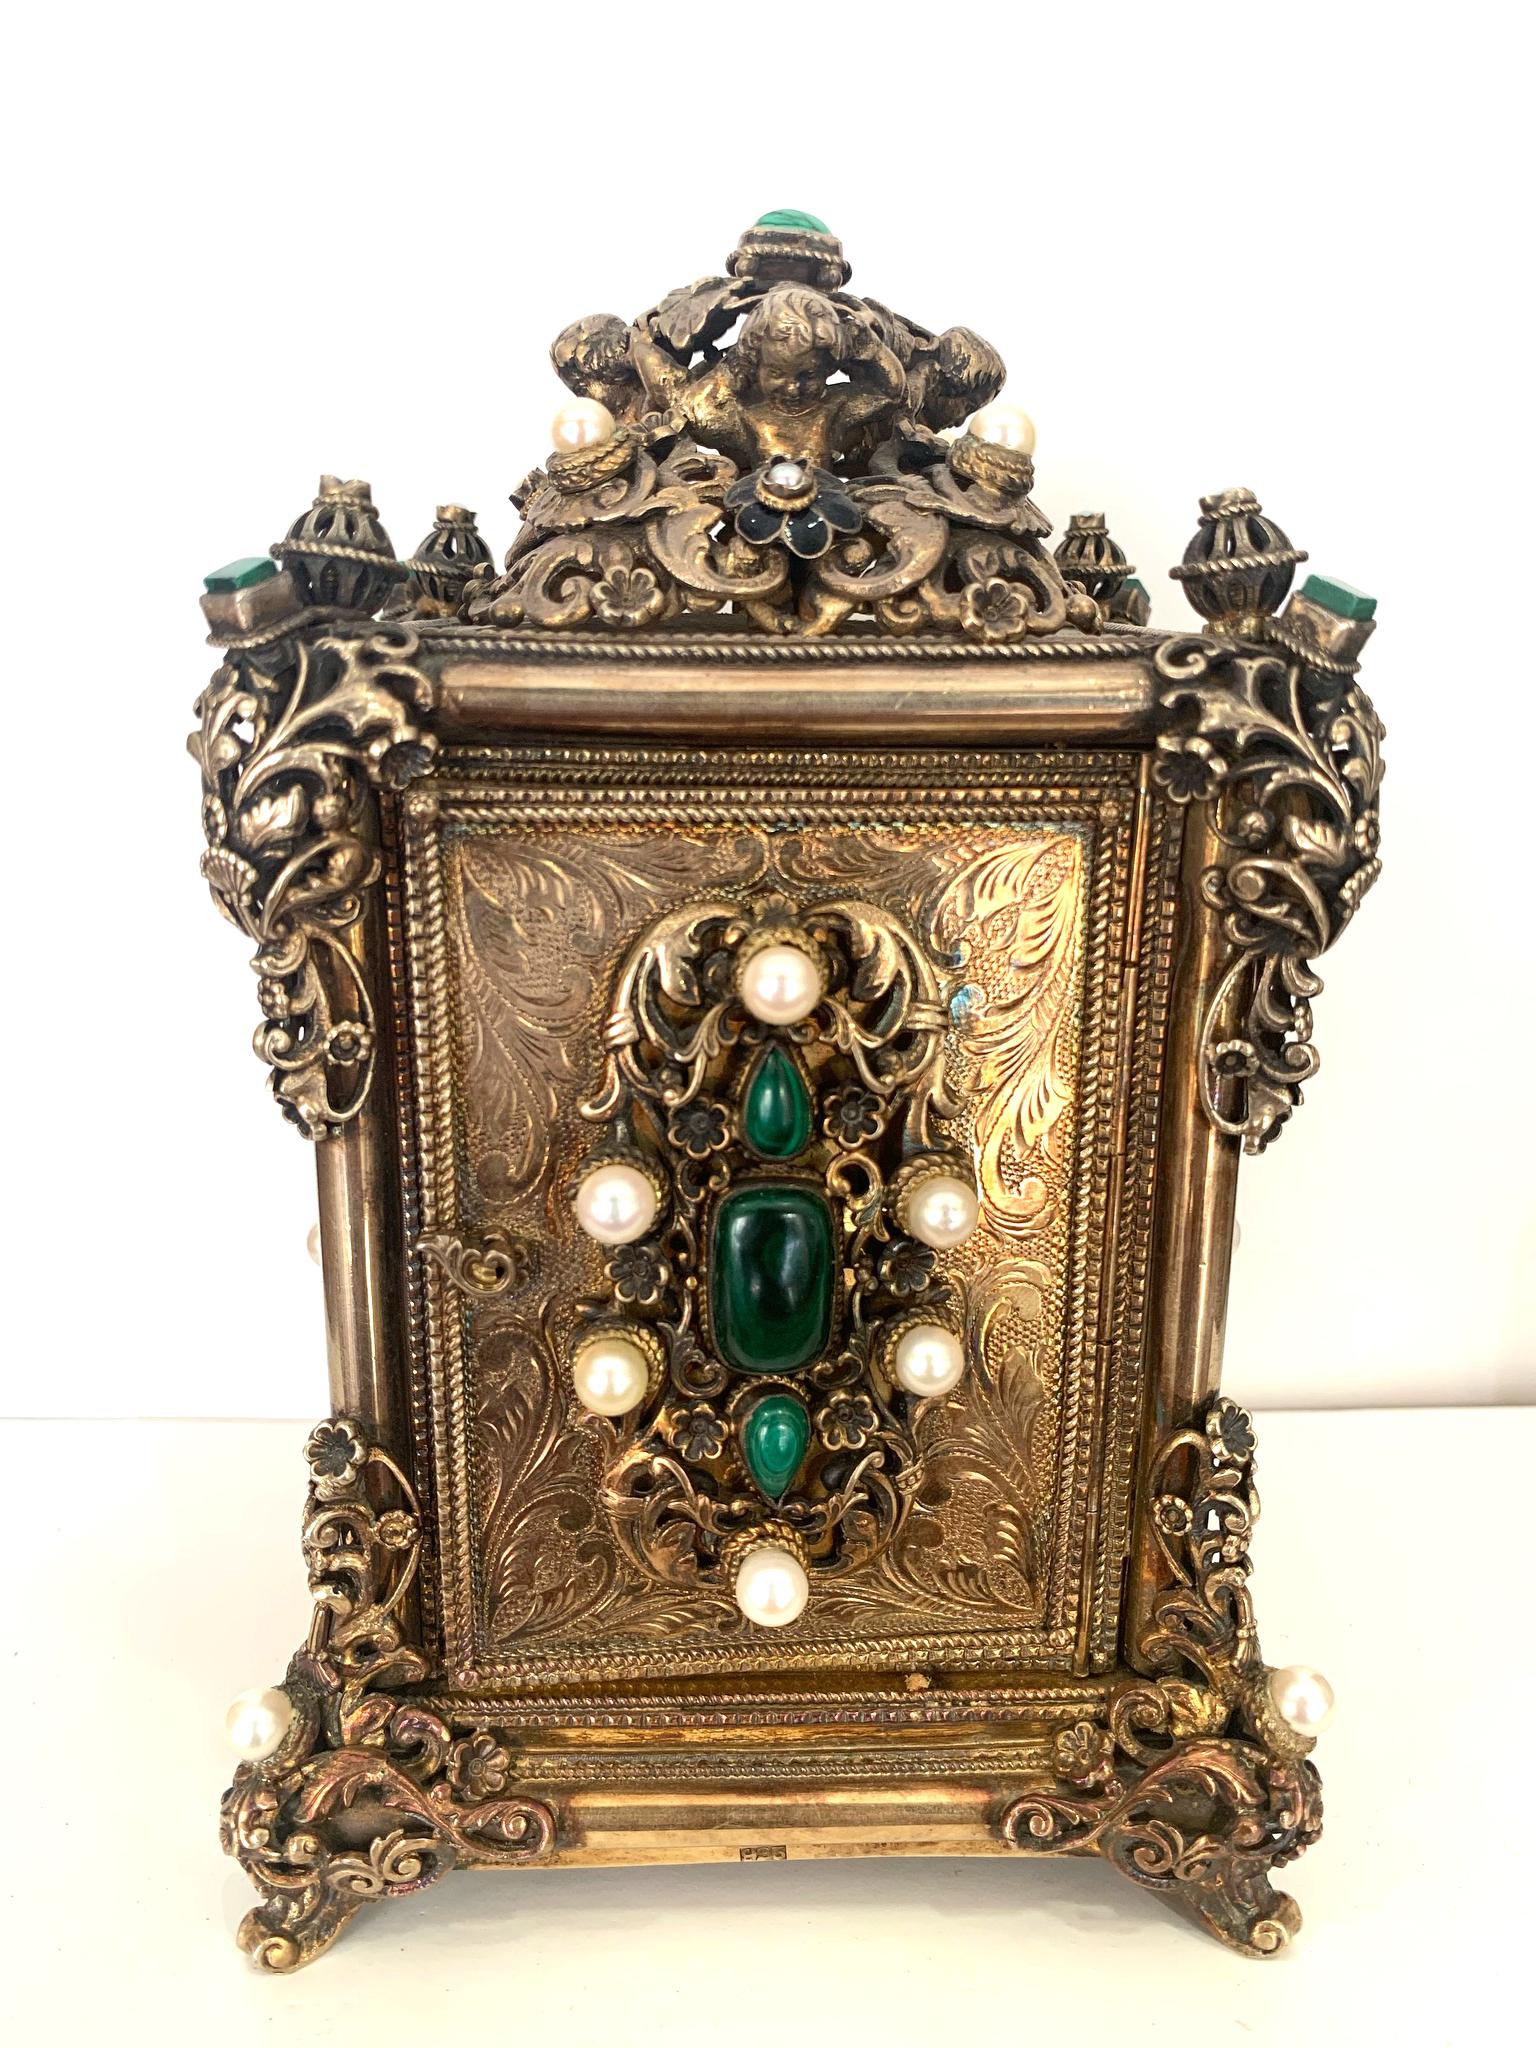 Horloge de table ancienne

Belle horloge des années 30. 
En argent, avec des perles et des pierres vertes de grande valeur.

